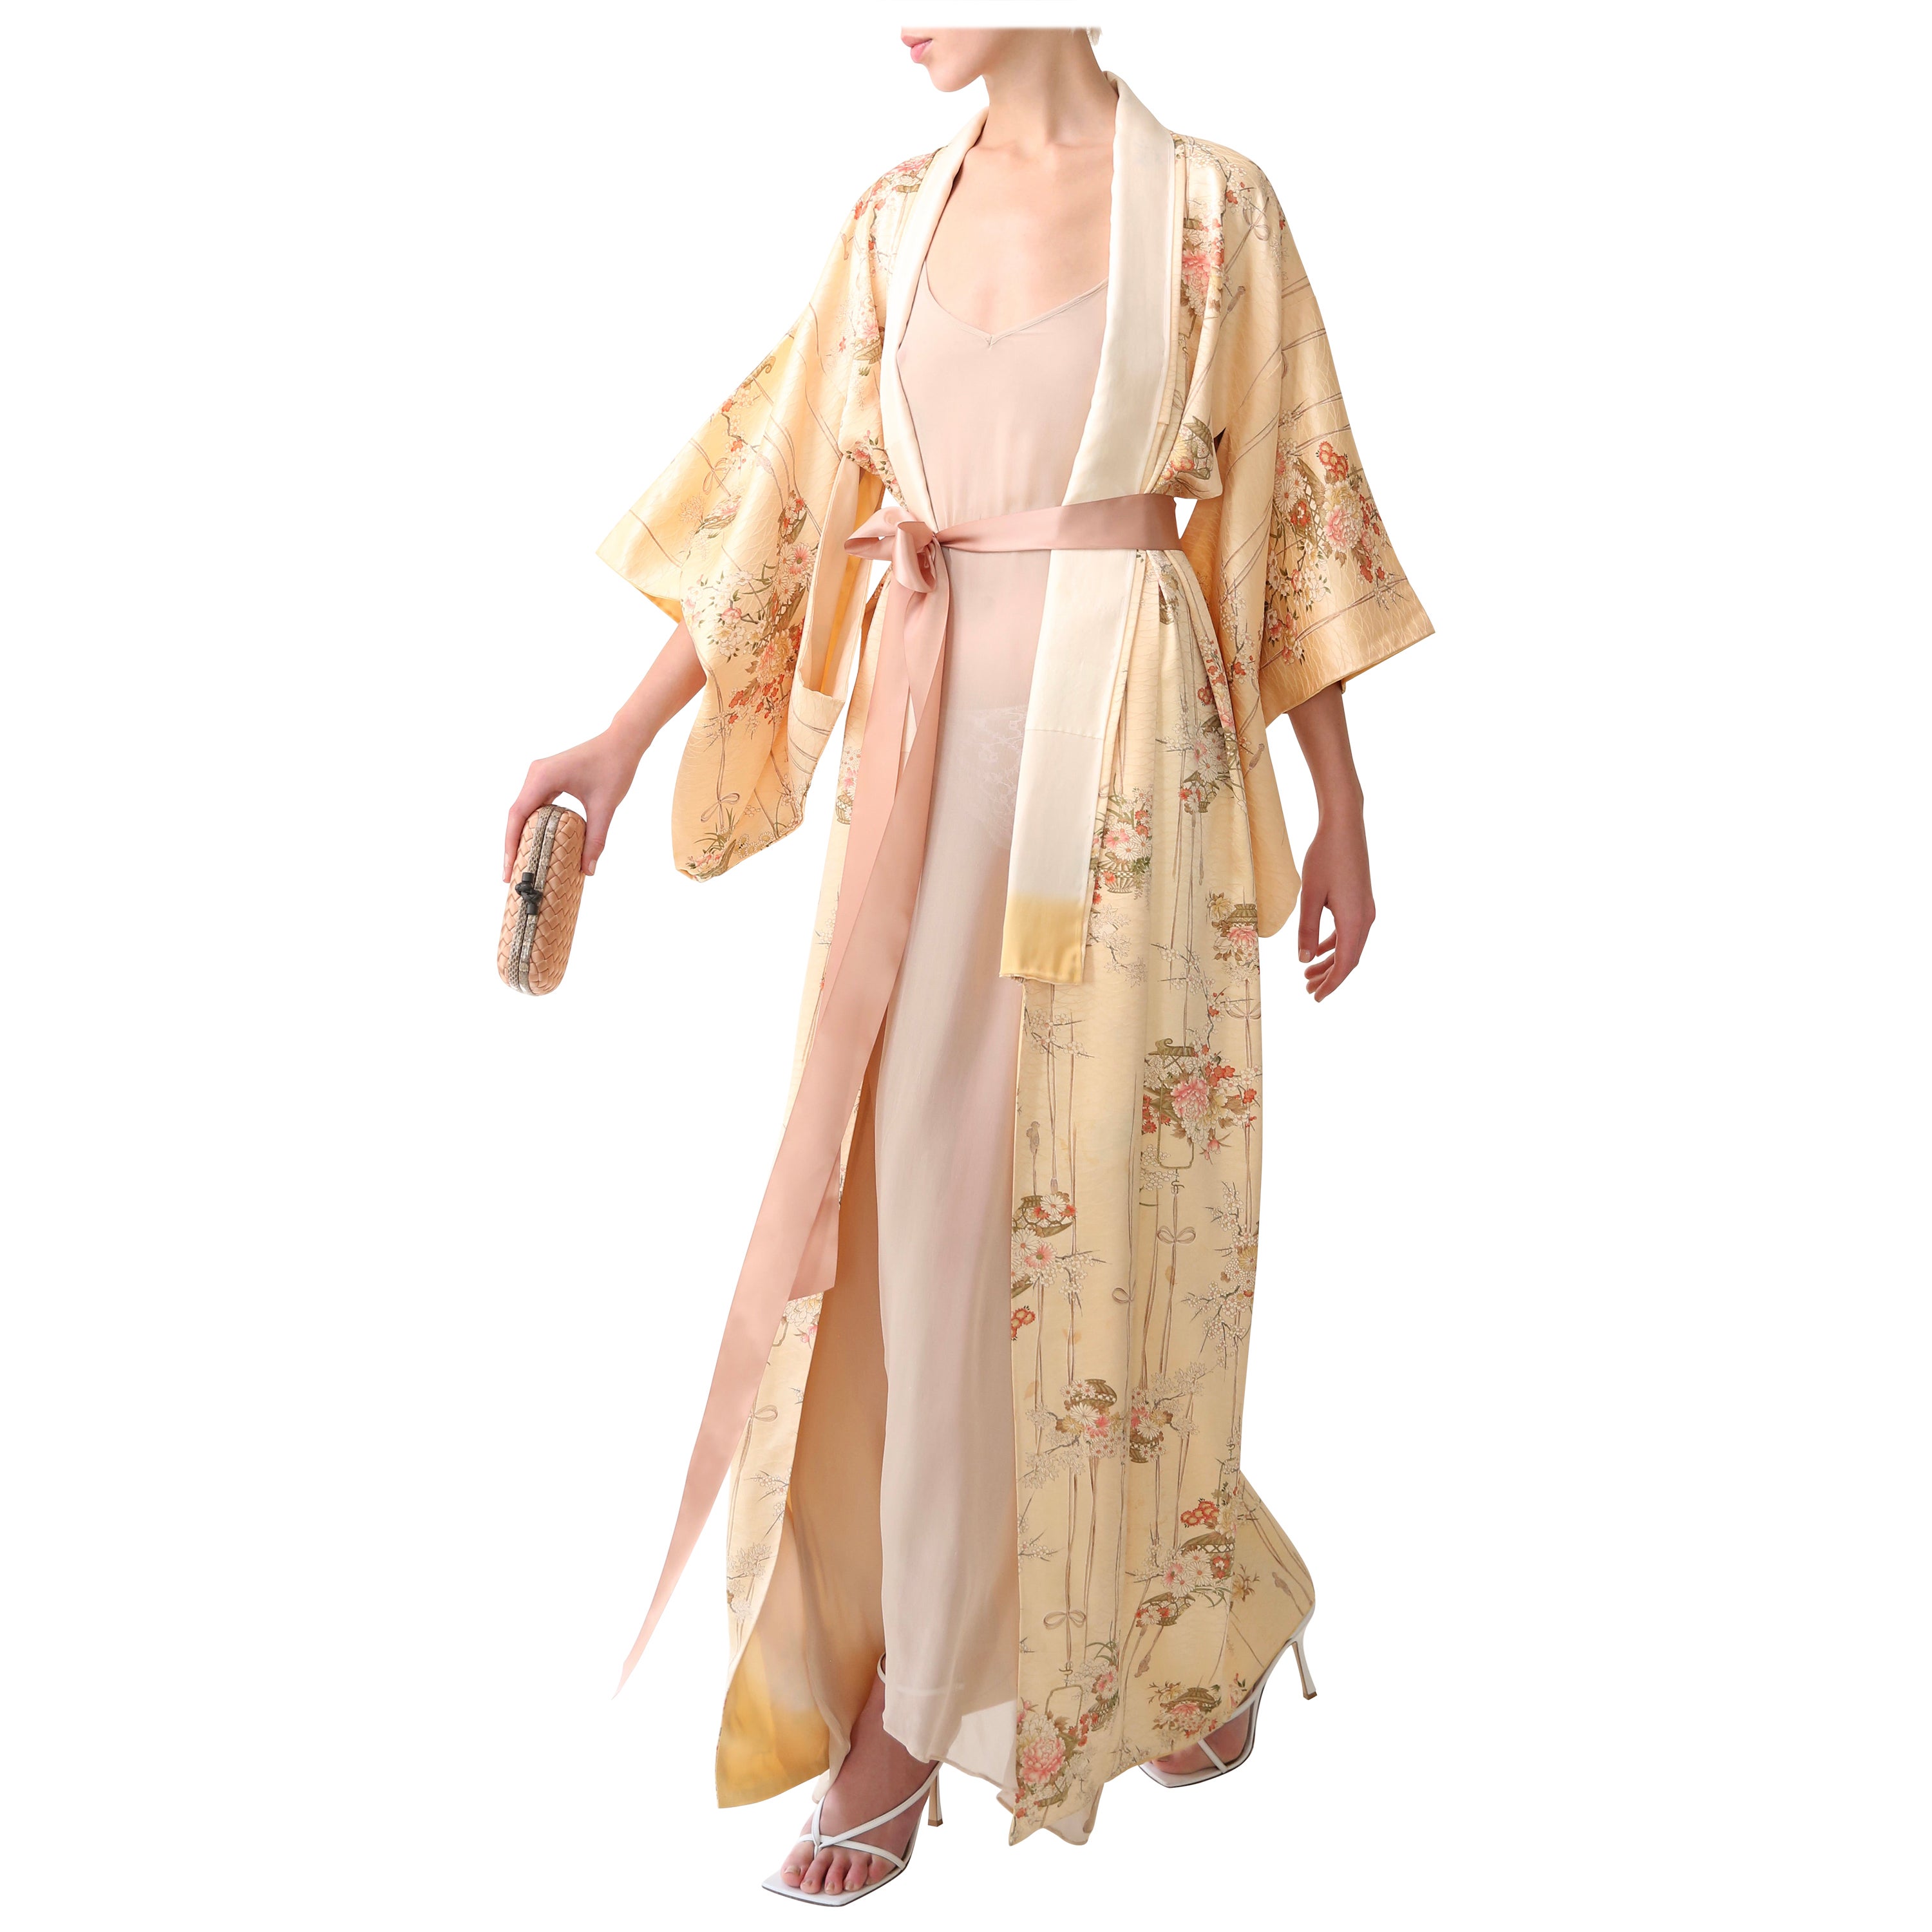 made with antique silk Japanese kimono fabric Miniature Silk Kimono Jewelry Box